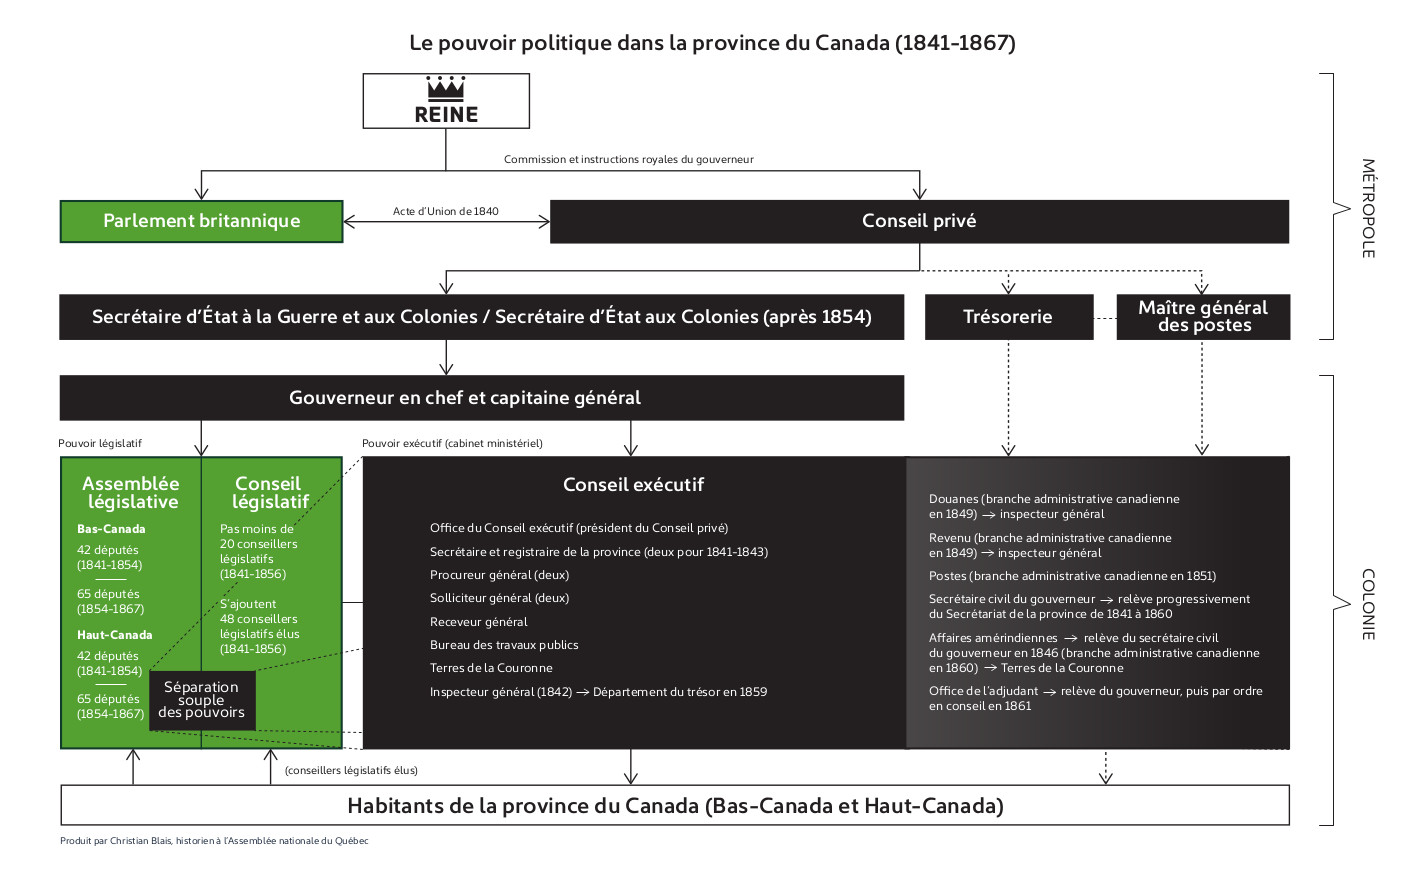 1841-1867 : Le gouvernement de la Province du Canada